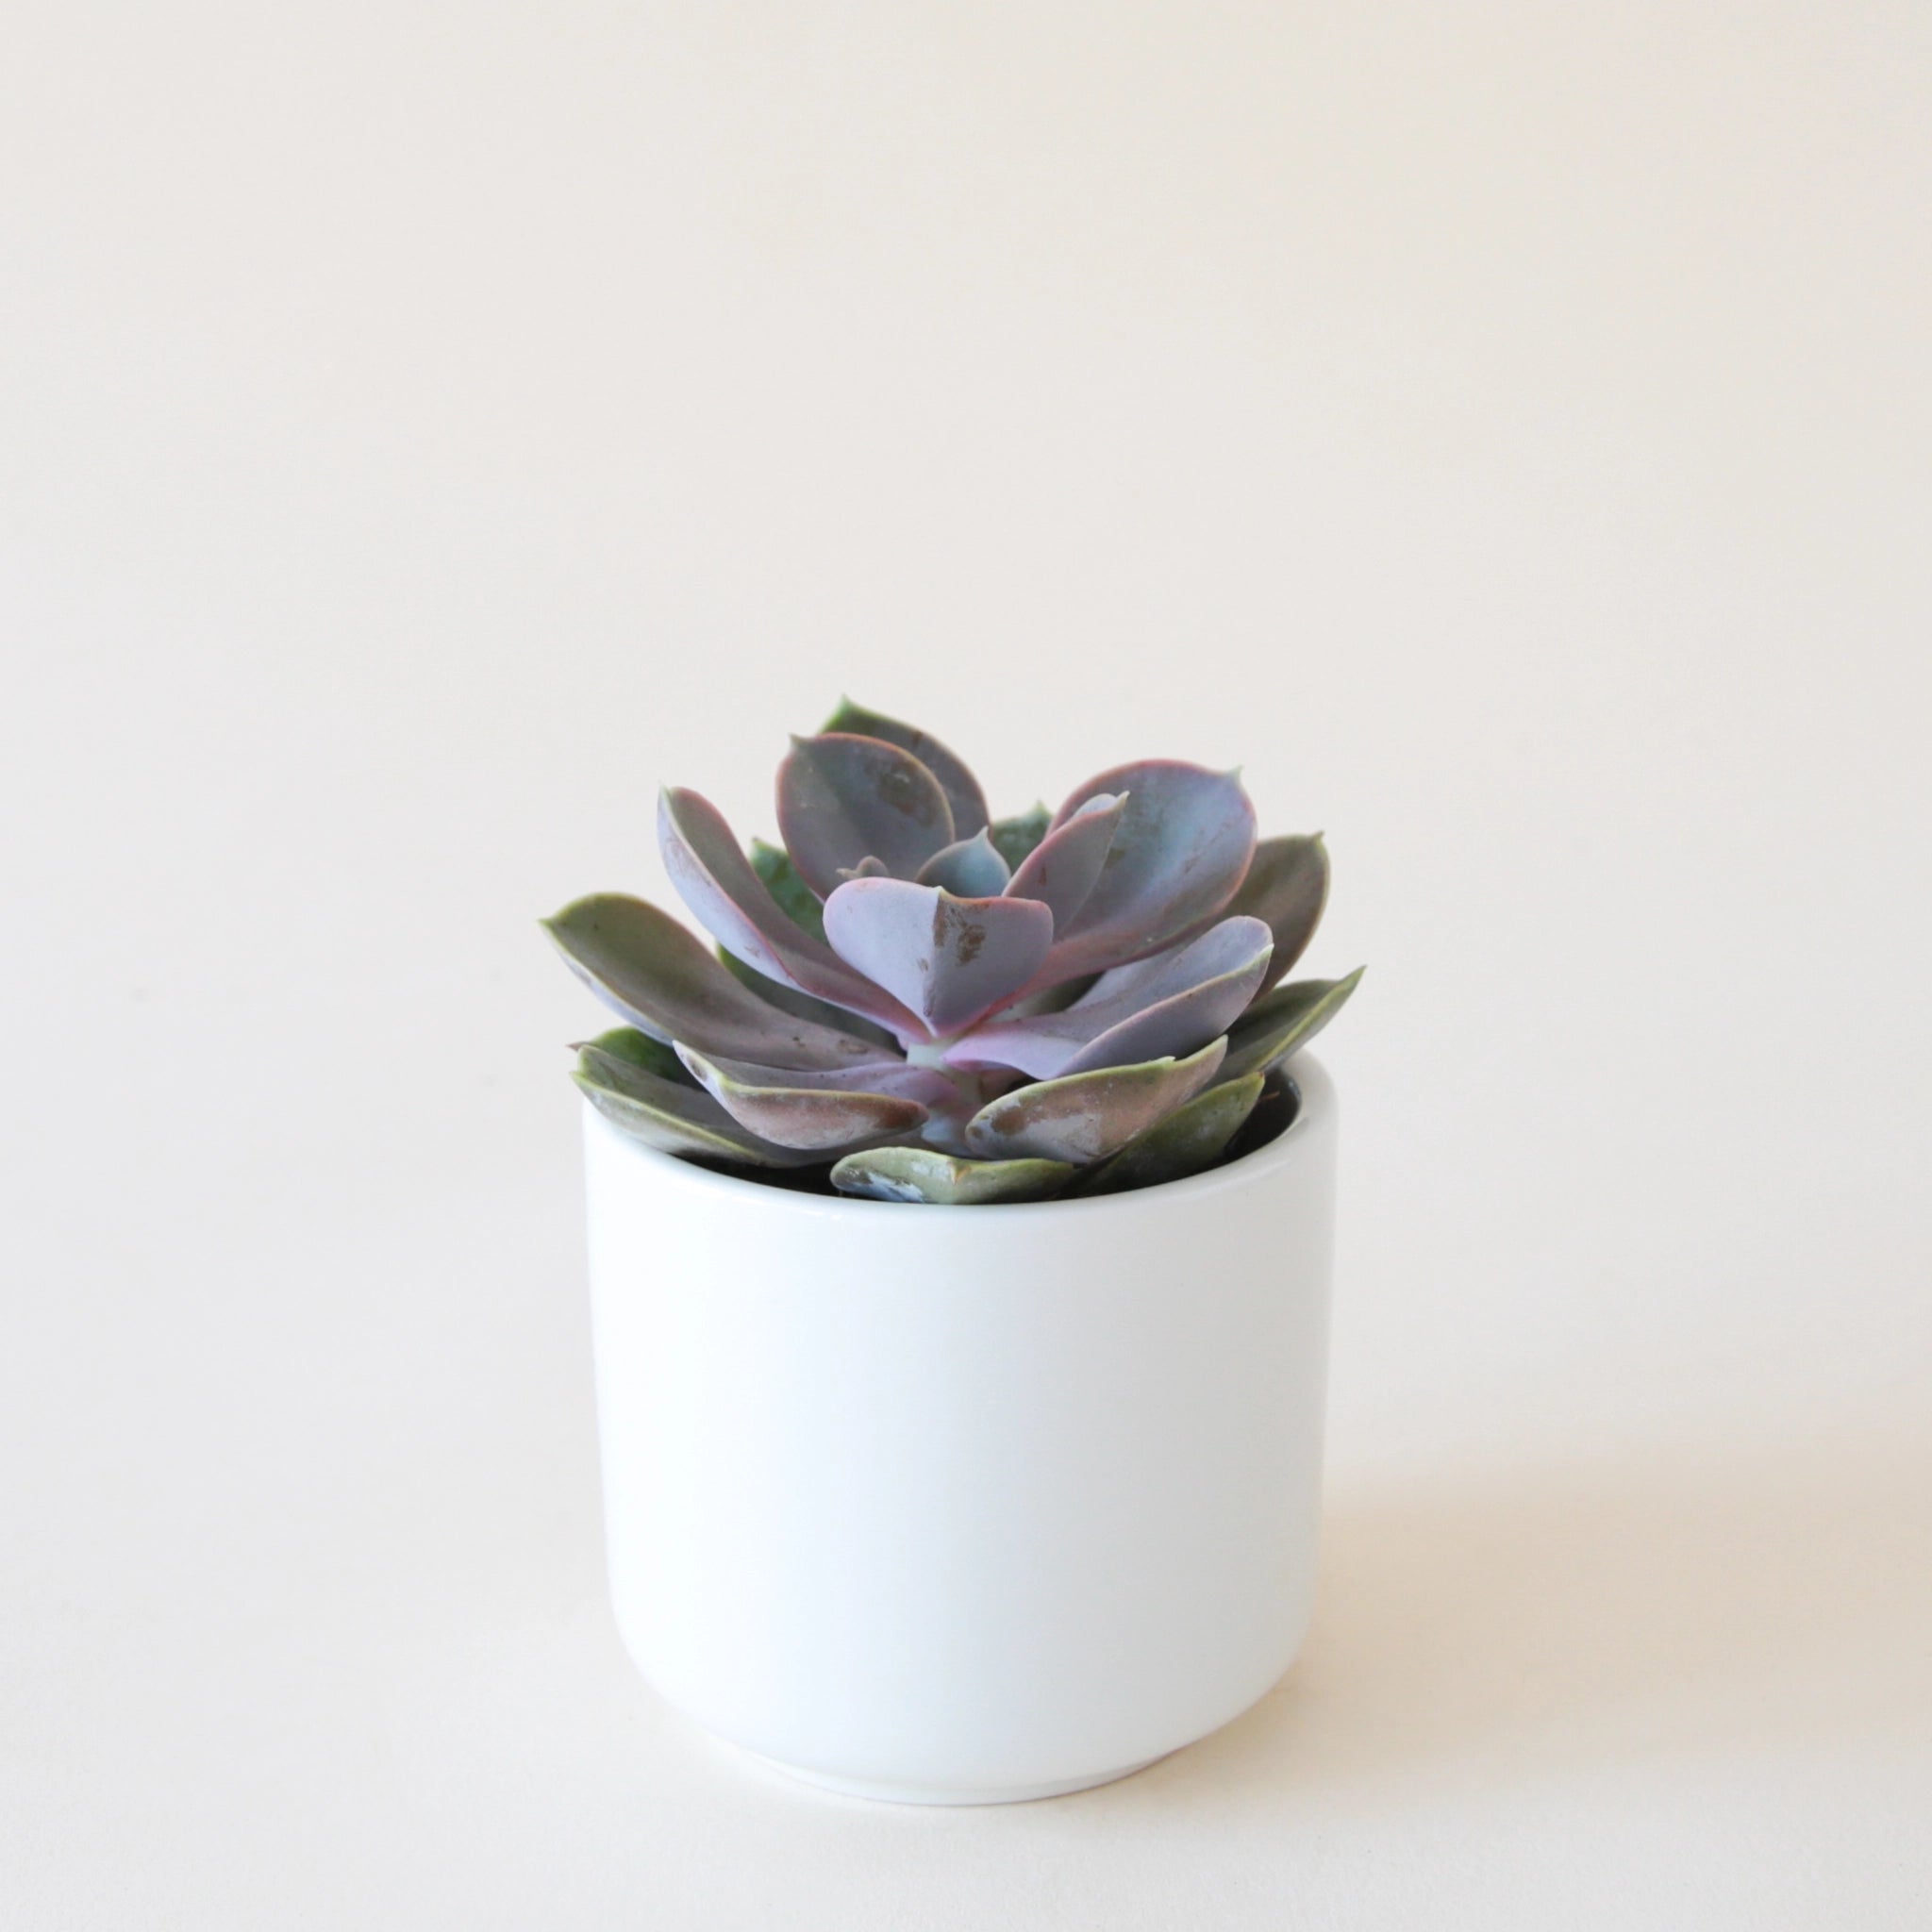 purple colored perle von nurnberg succulent in a small white pot